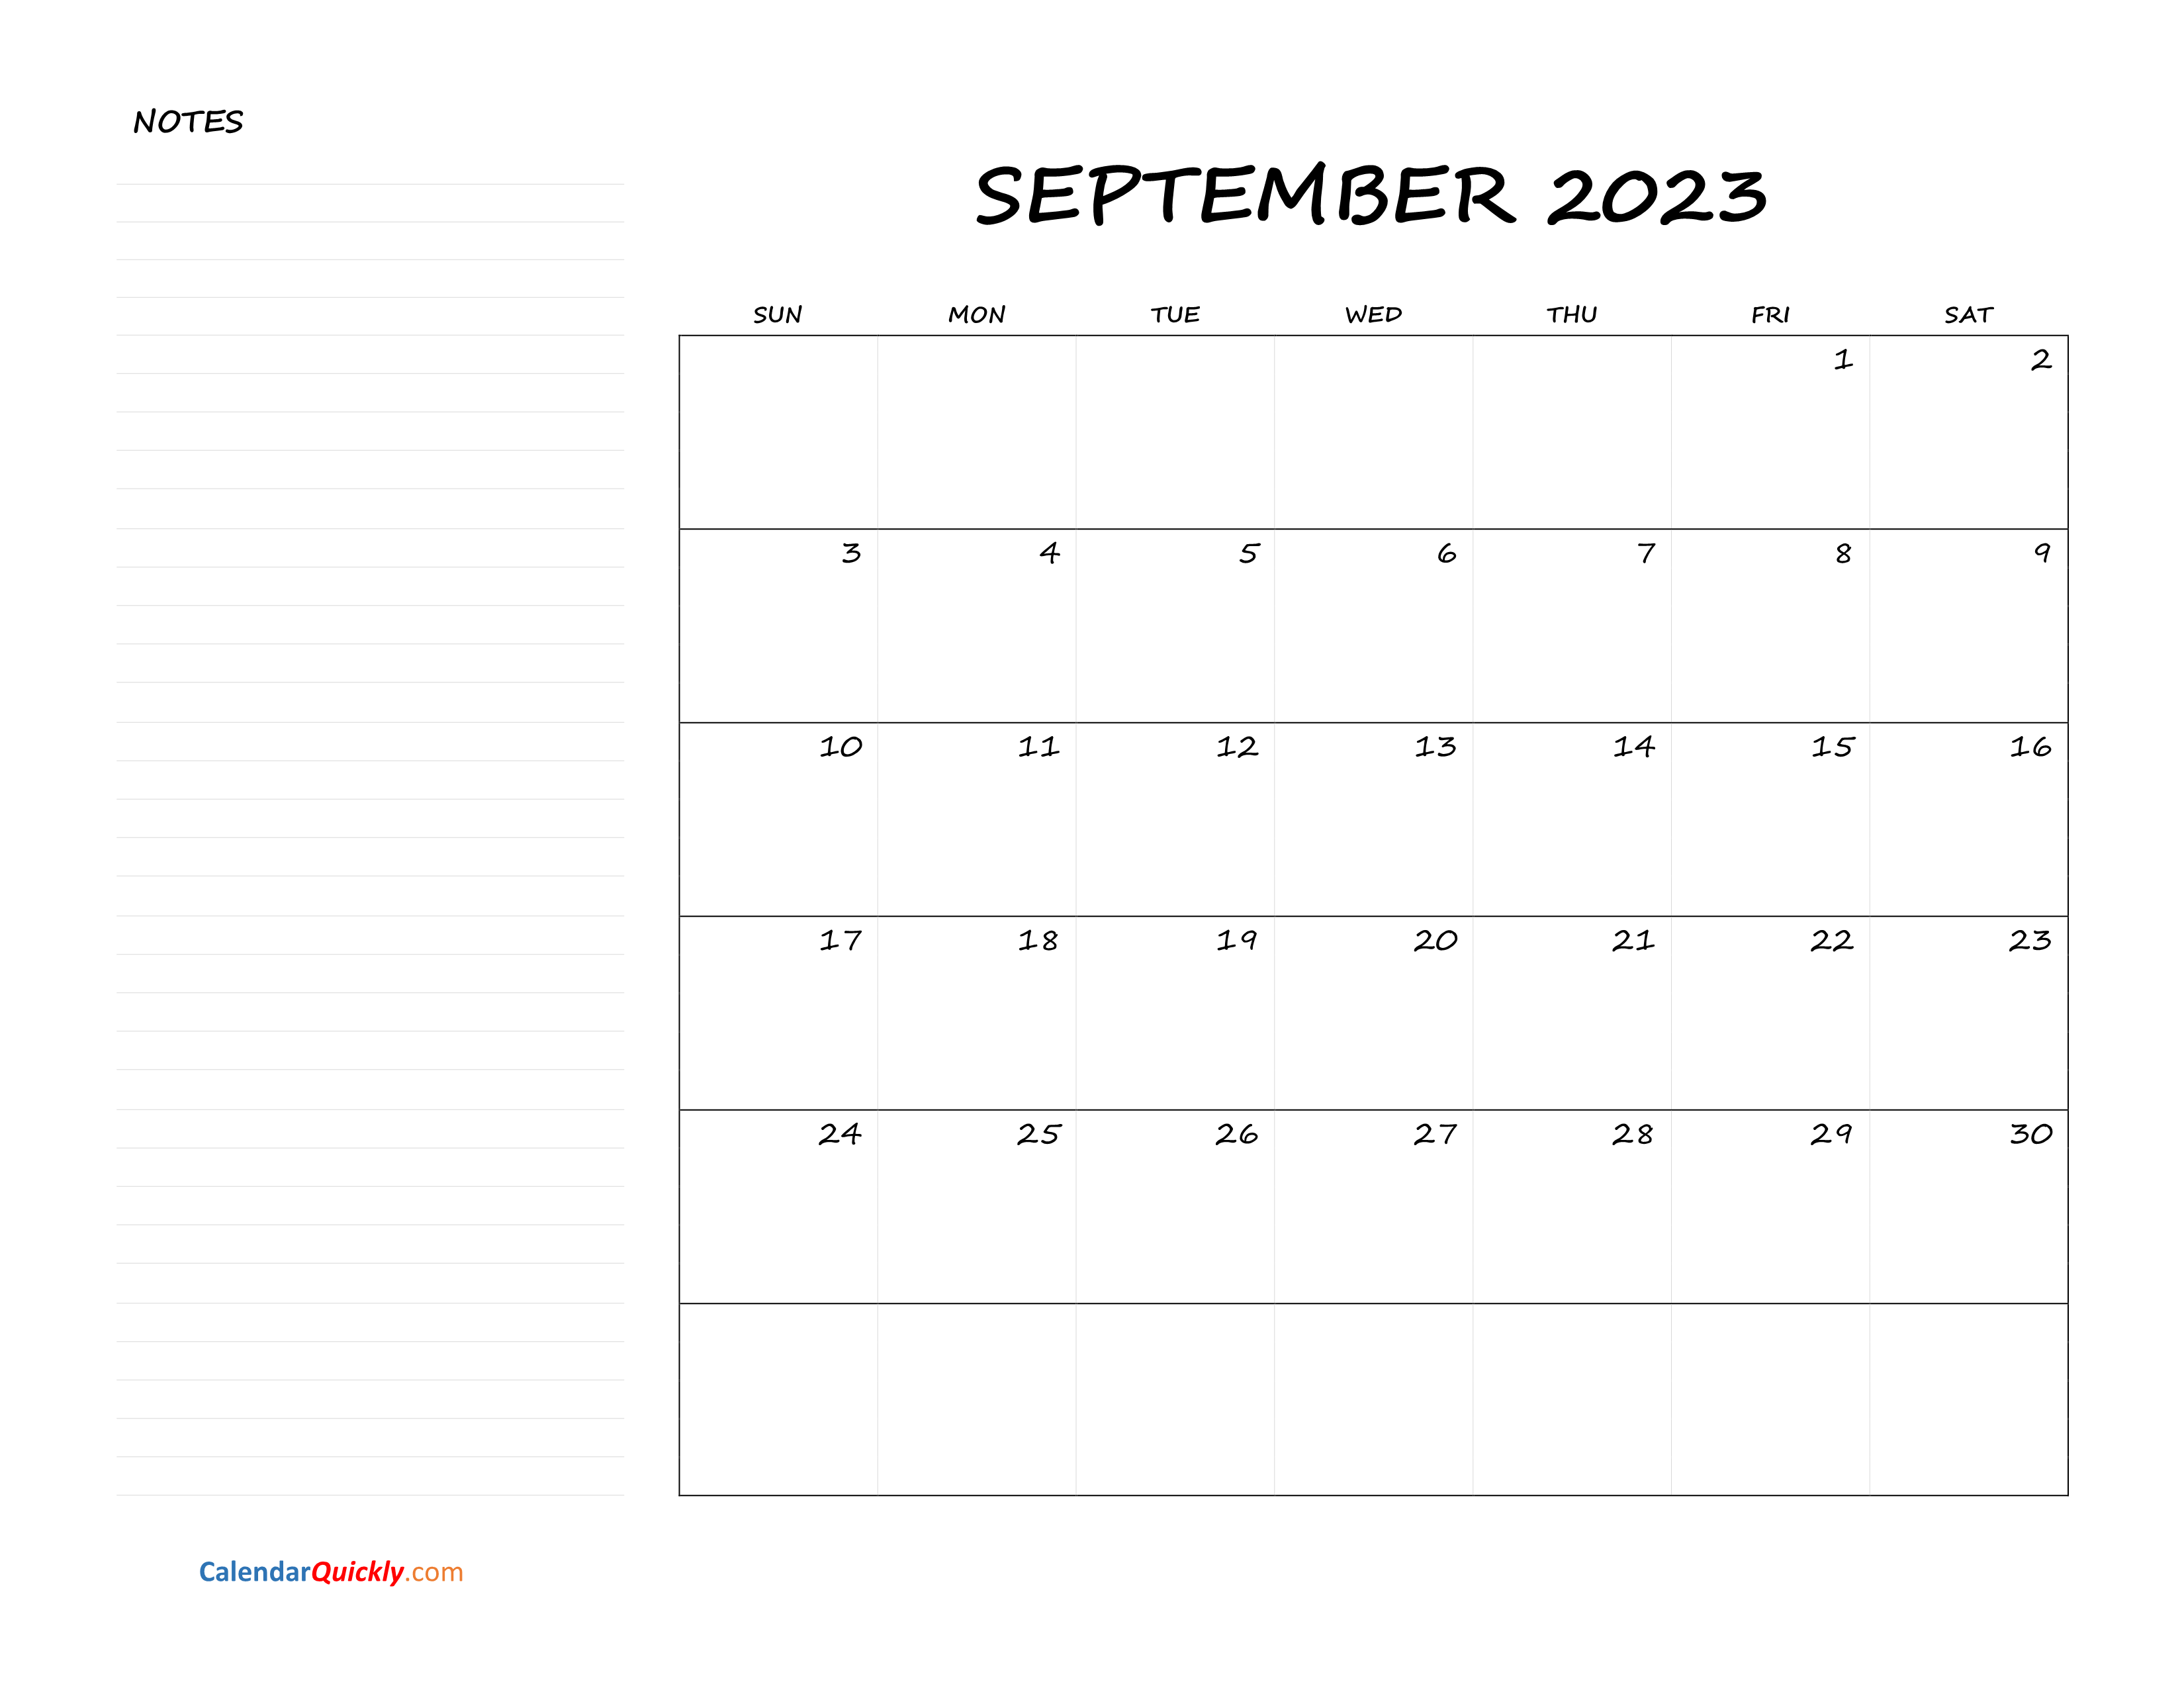 september-blank-calendar-2023-with-notes-calendar-quickly